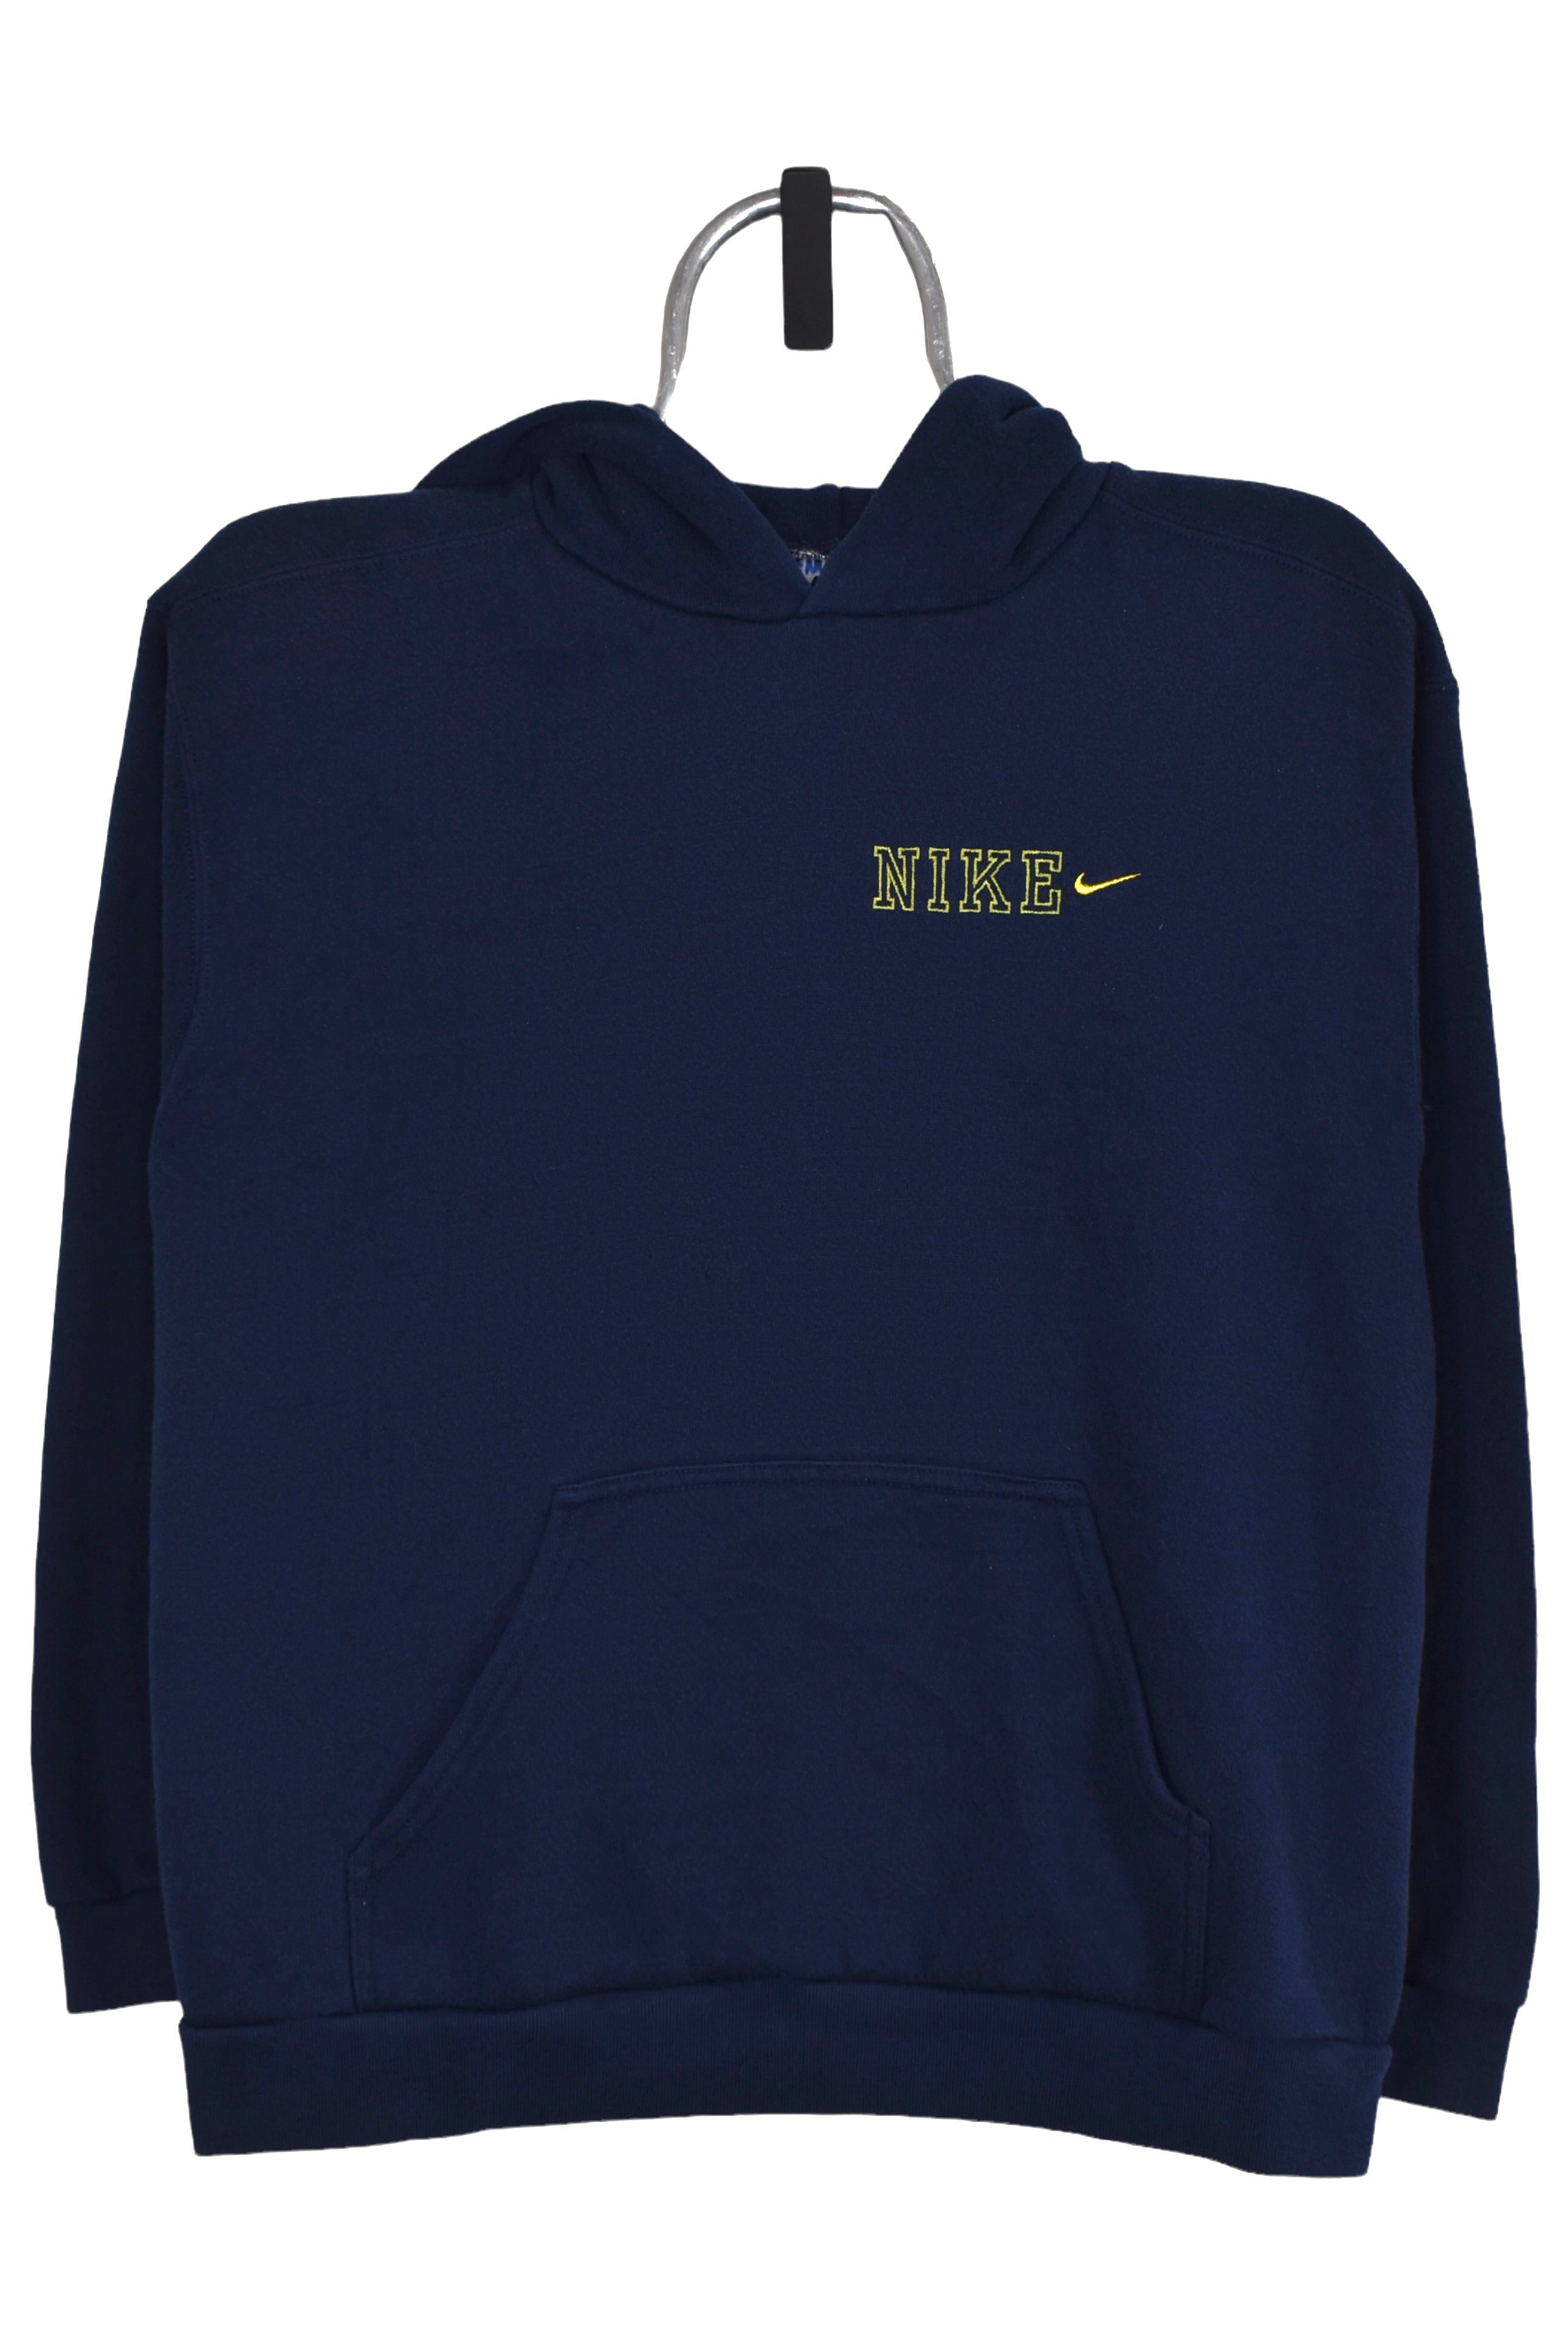 Women's vintage Nike hoodie (S), navy embroidered sweatshirt